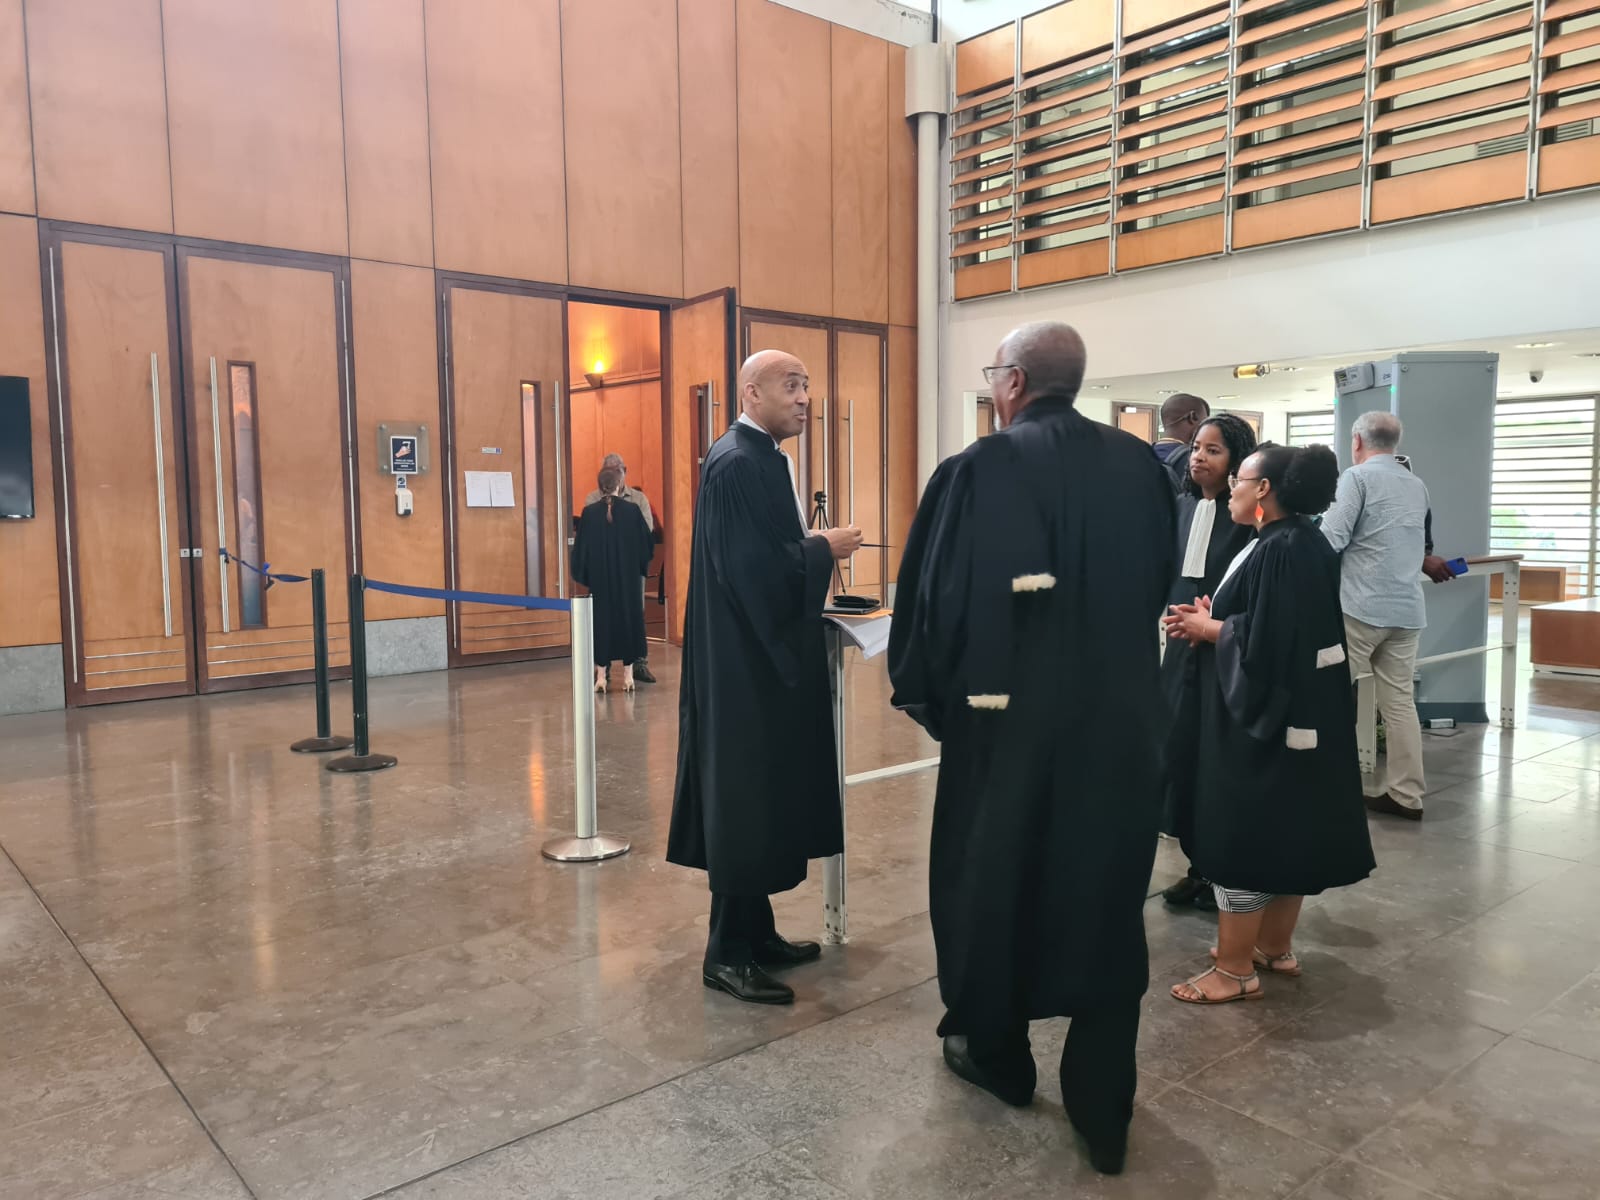     Procès de la Sodem : échange musclé entre Serge Letchimy et le procureur

